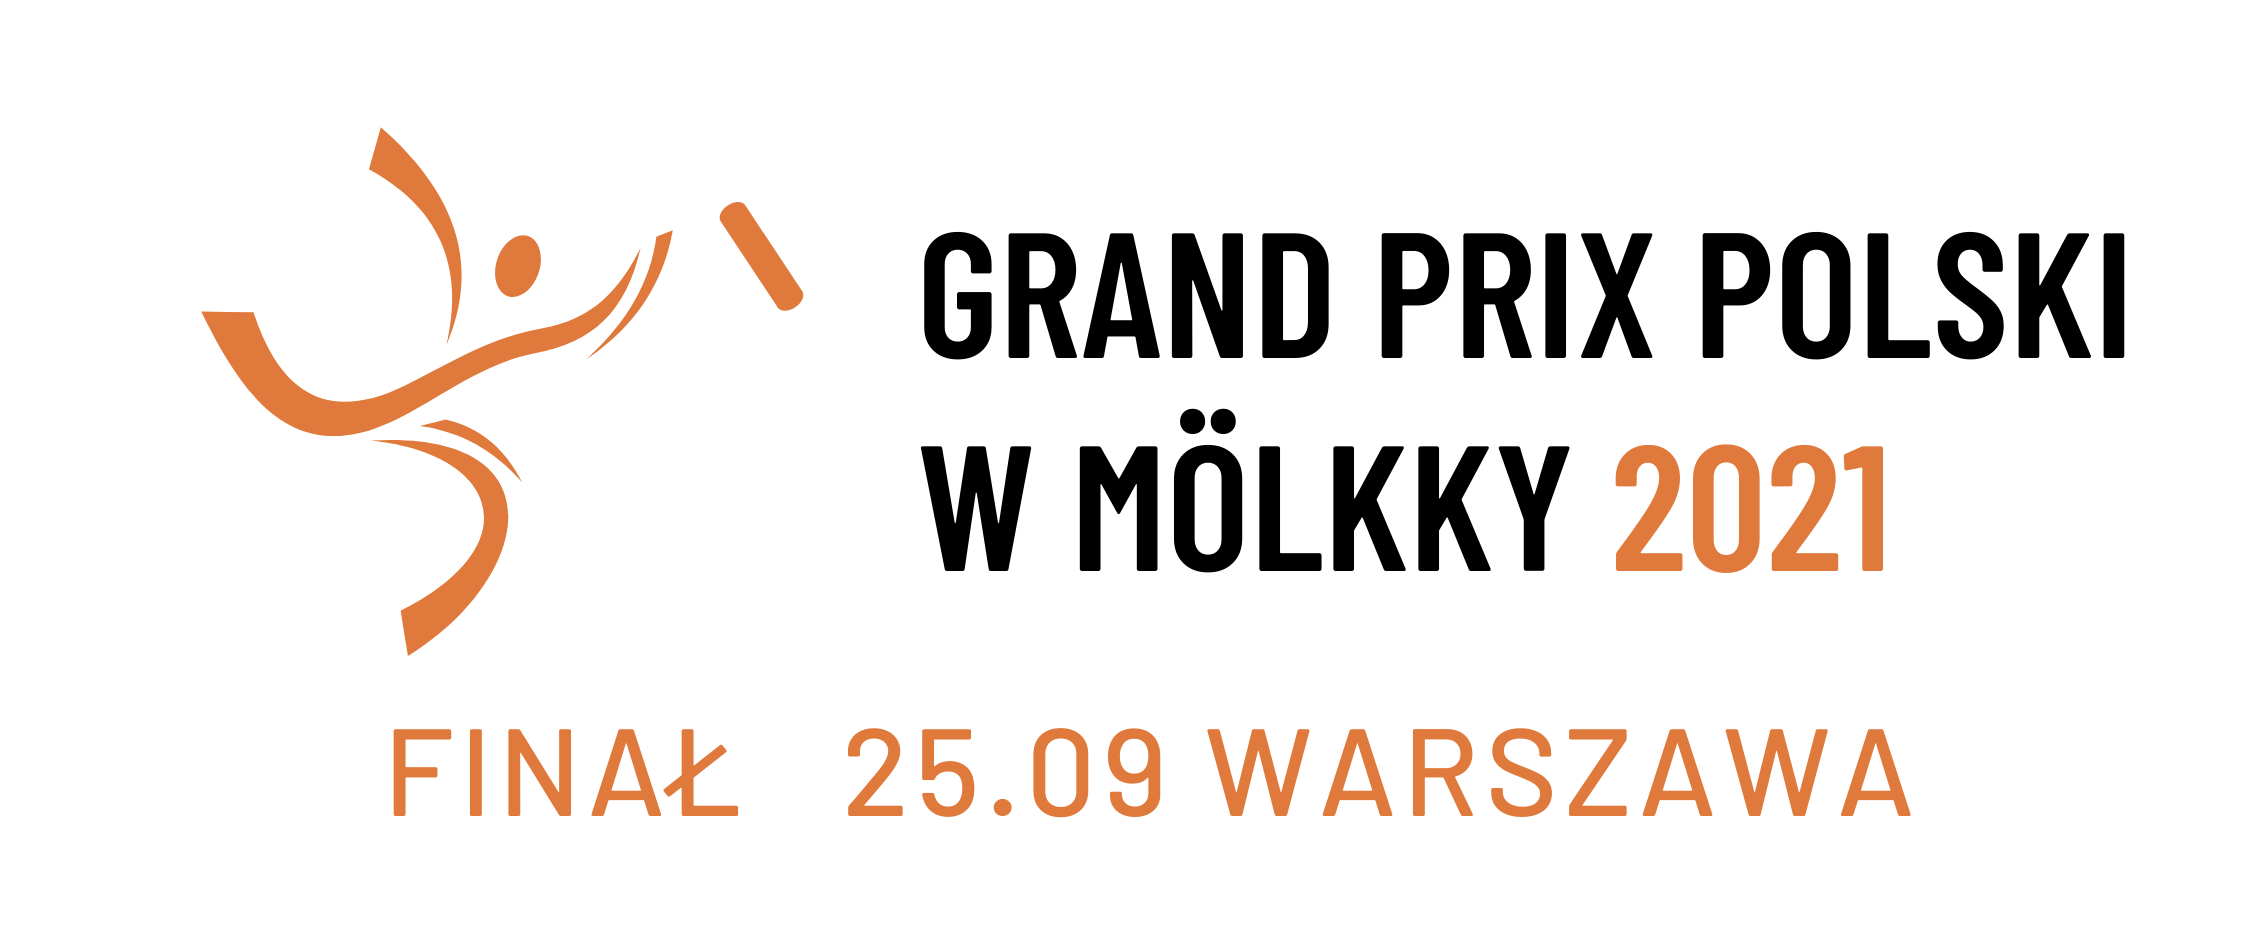 Grand Prix Polski w Mölkky 2021 - Event 5/5